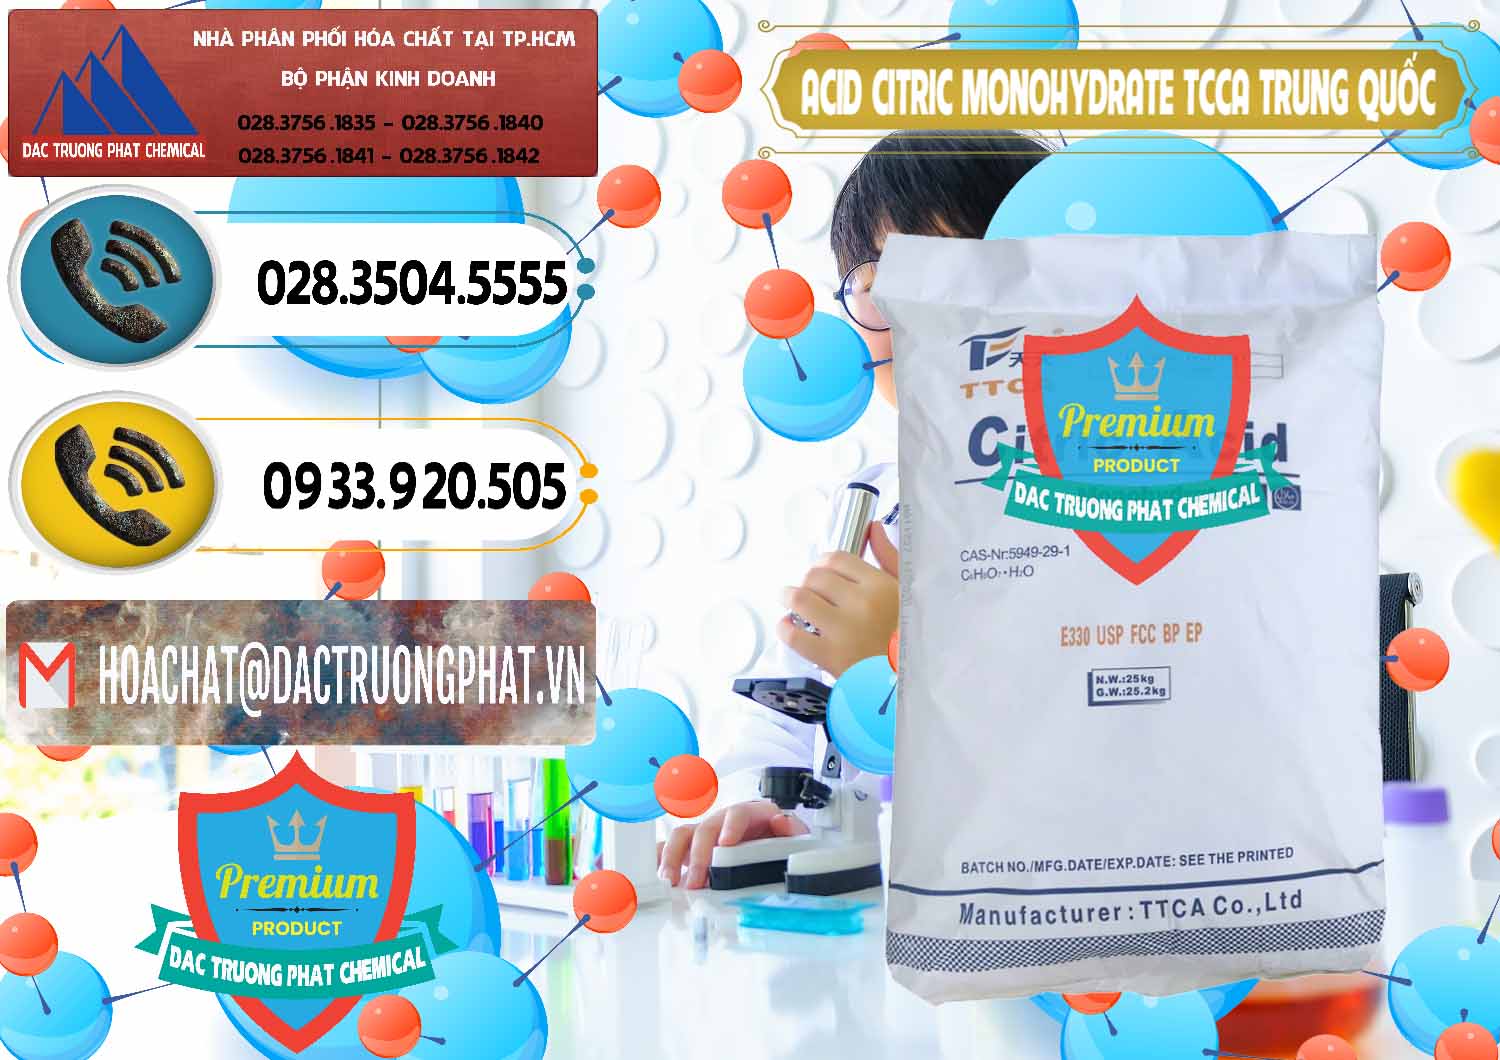 Cty cung ứng và bán Acid Citric - Axit Citric Monohydrate TCCA Trung Quốc China - 0441 - Công ty chuyên cung ứng & phân phối hóa chất tại TP.HCM - hoachatdetnhuom.vn